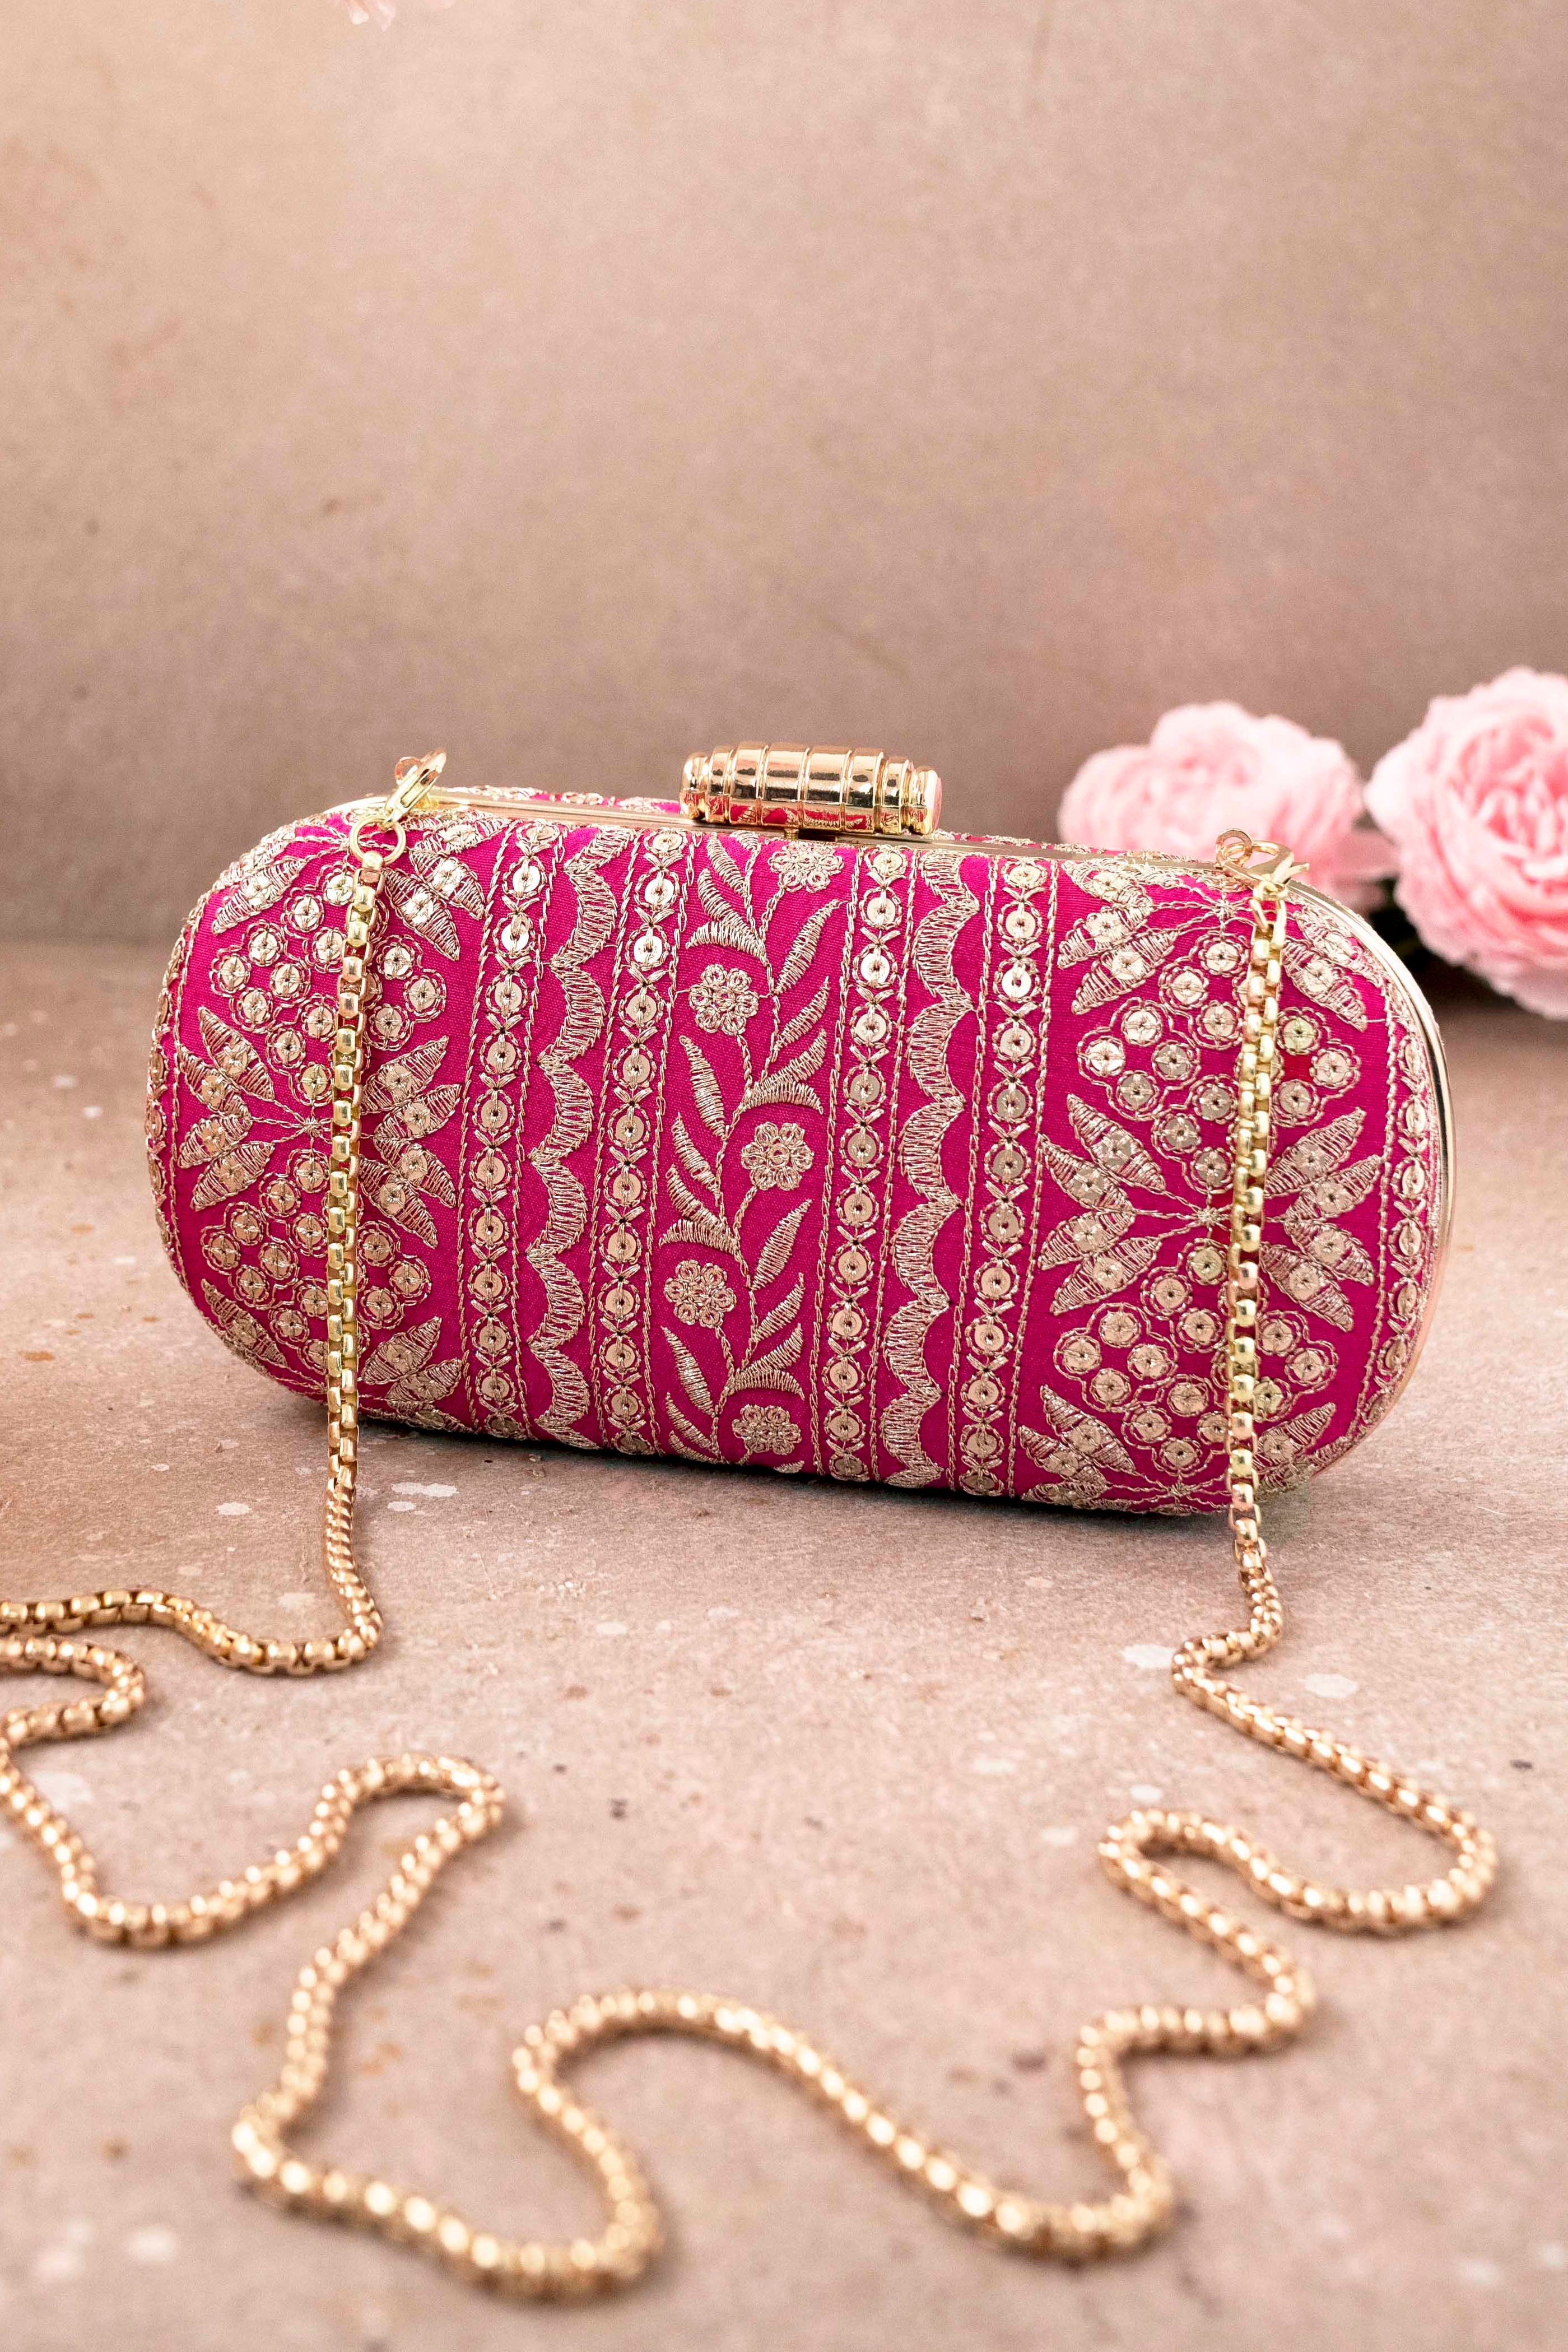 CELINE Bi-colour Clutch Bag Pink,Orange | PLAYFUL